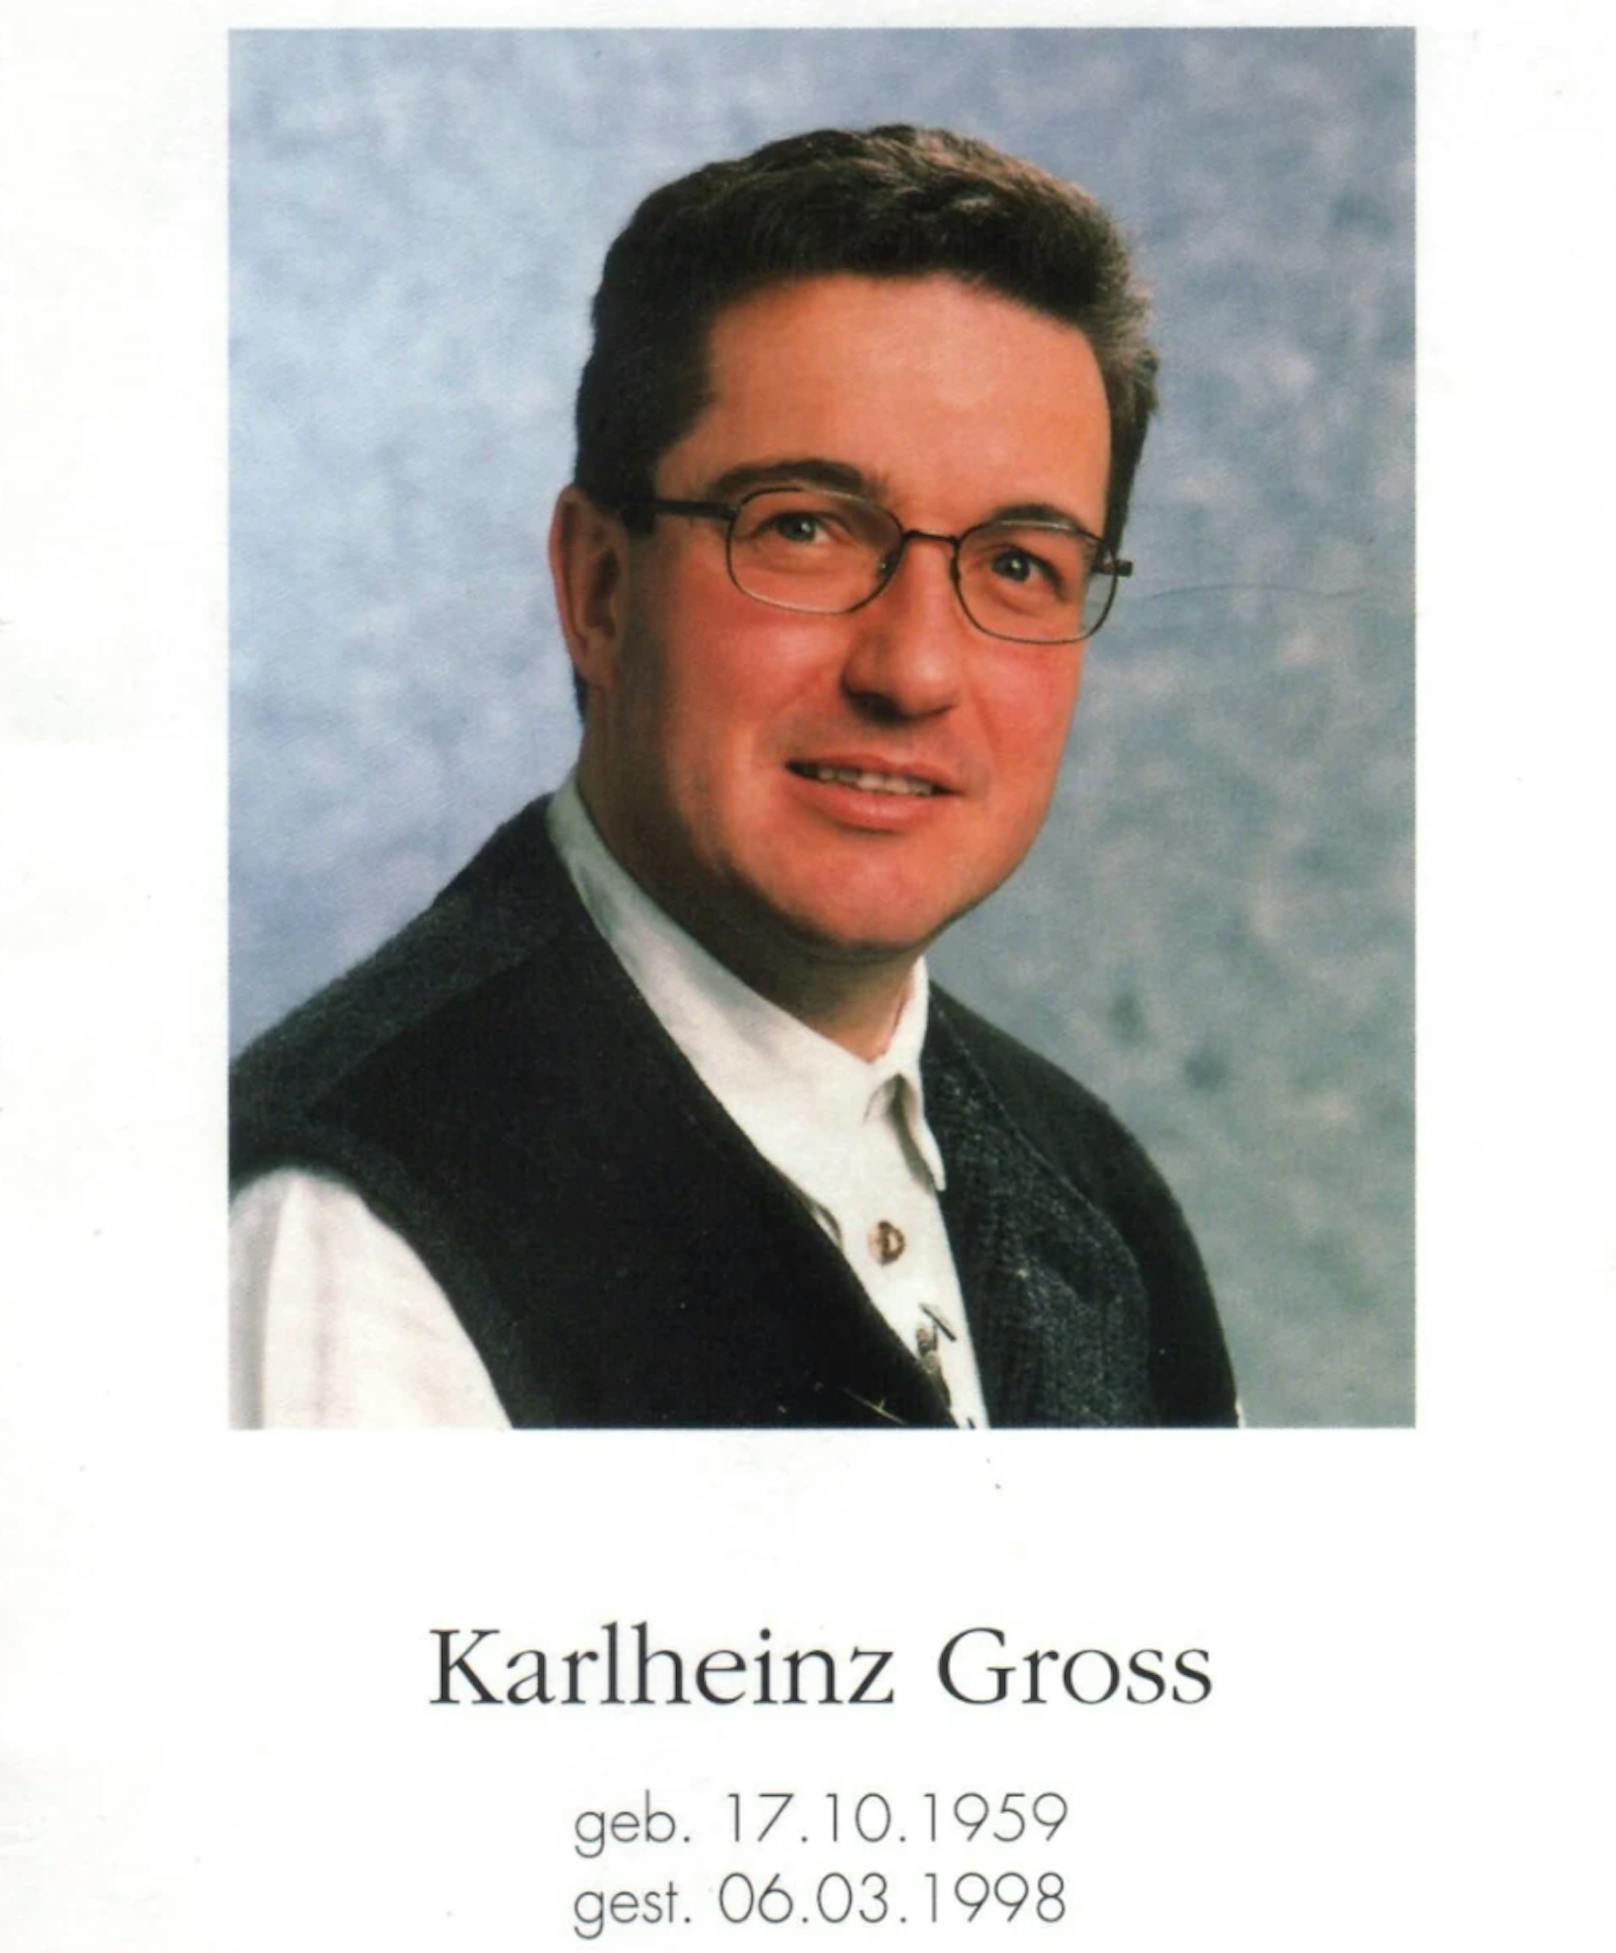 Karlheinz Gross, der damalige Manager der Kastelruther Spatzen, wurde 1998 tot aufgefunden.